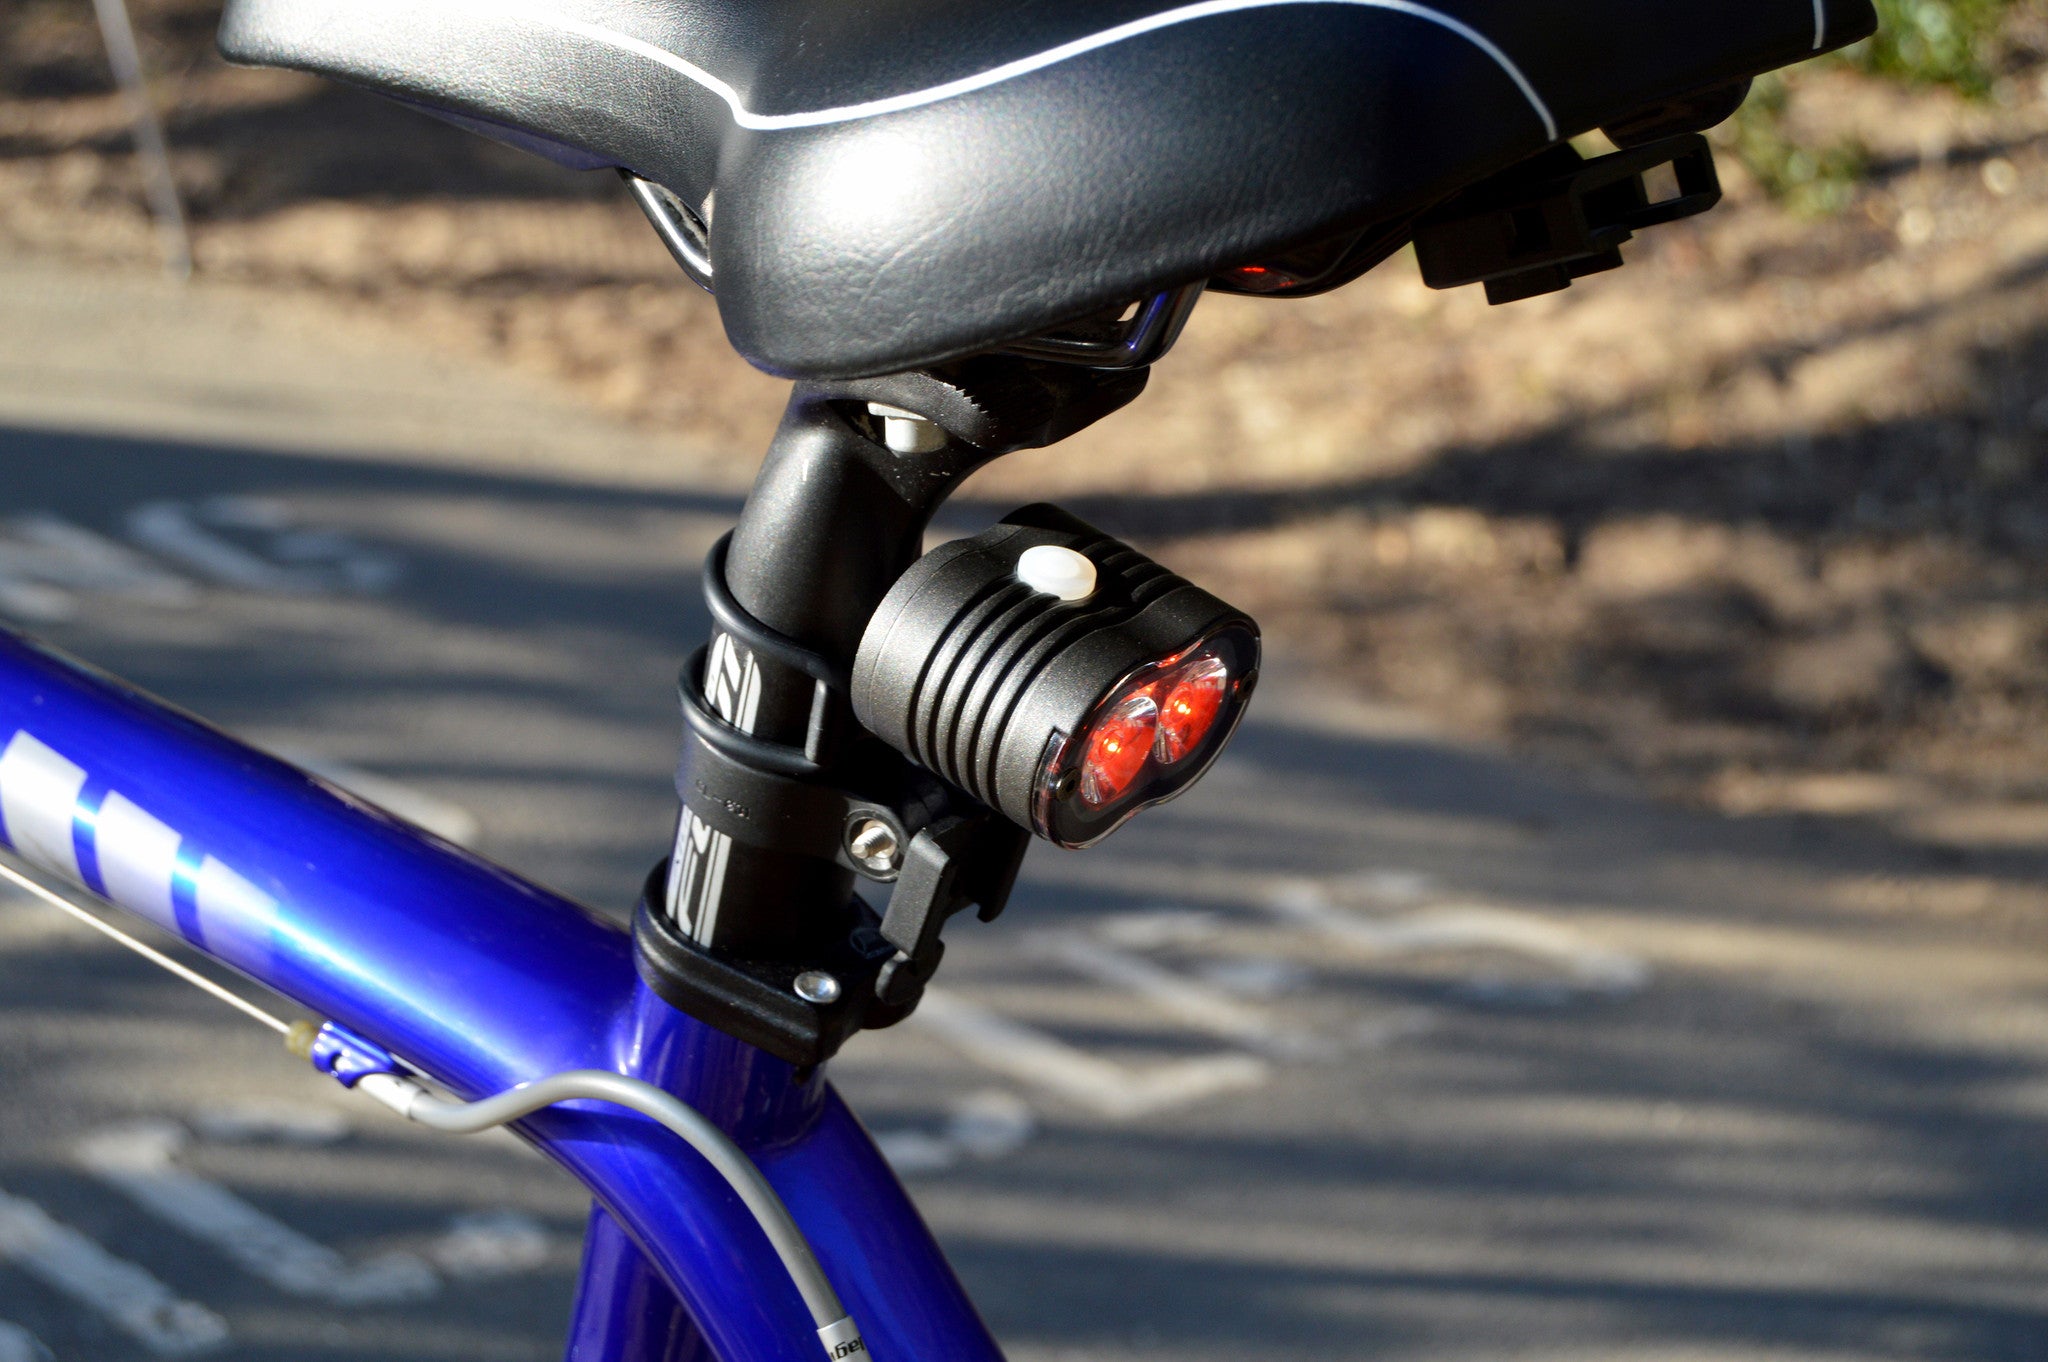 200 lumen rear bike light